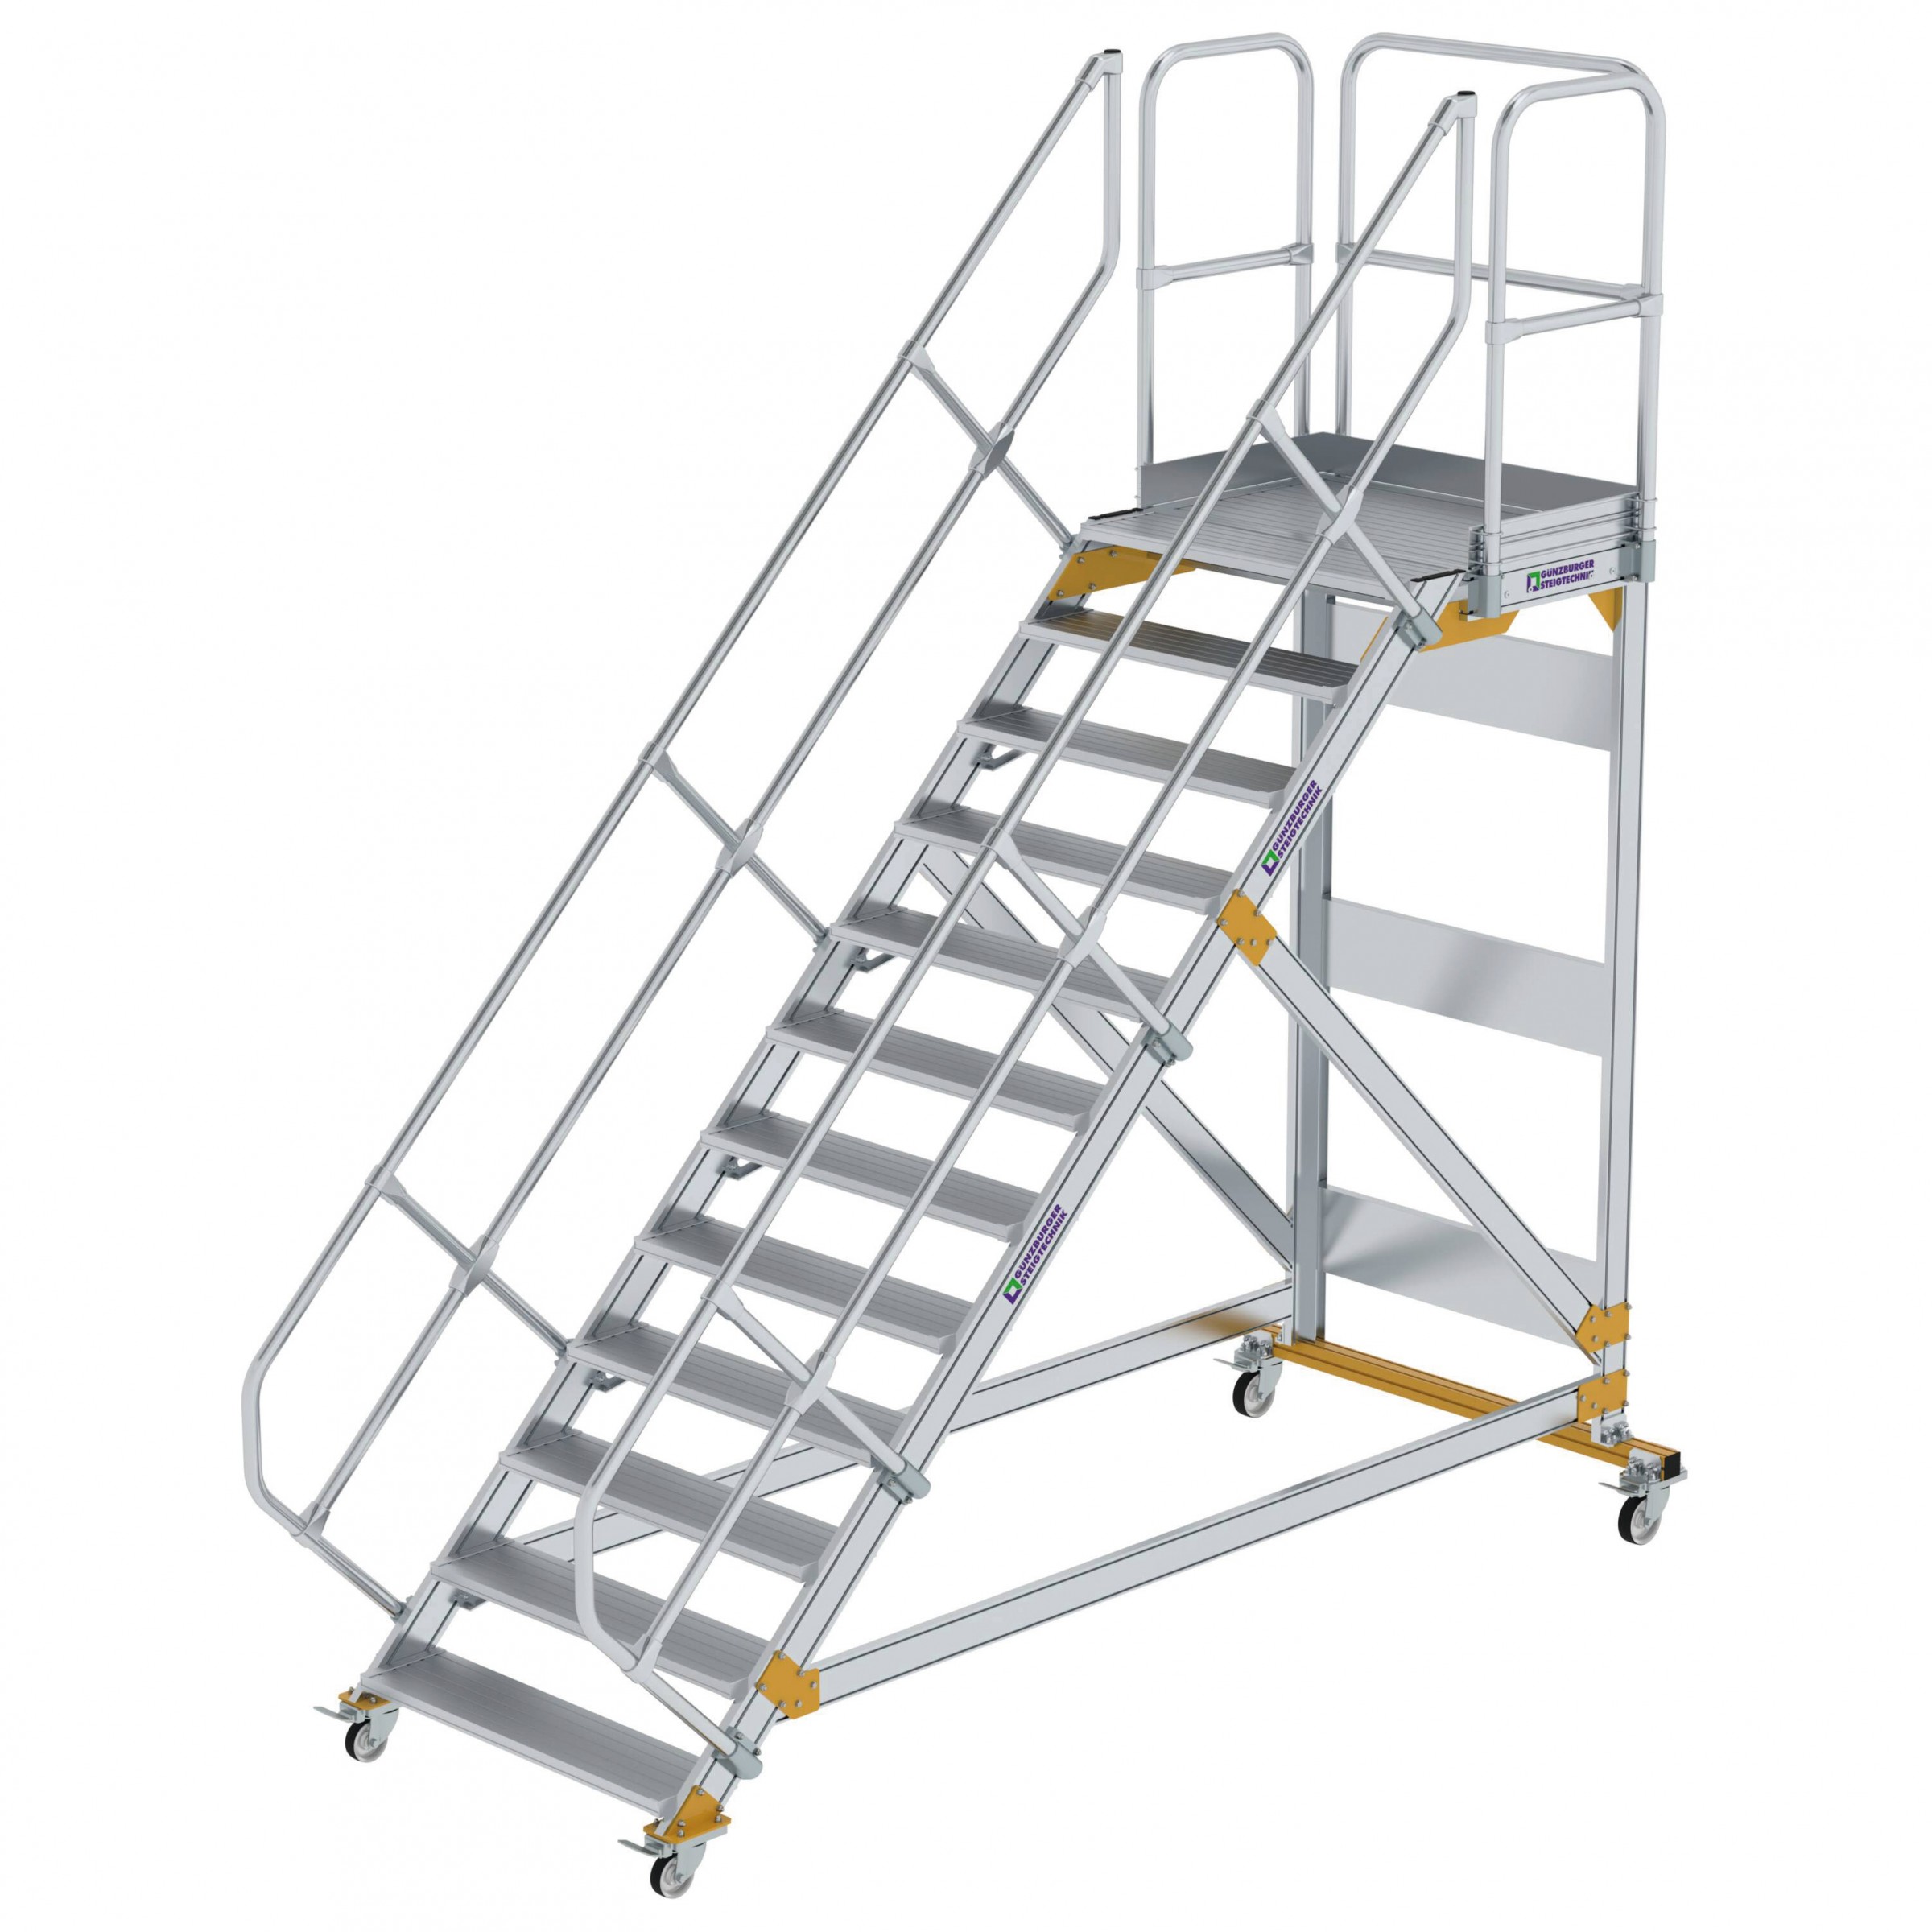 Aluminium-Plattform-Treppe fahrbar 45°, Stufenbreite 1000 mm, 4 Stufen